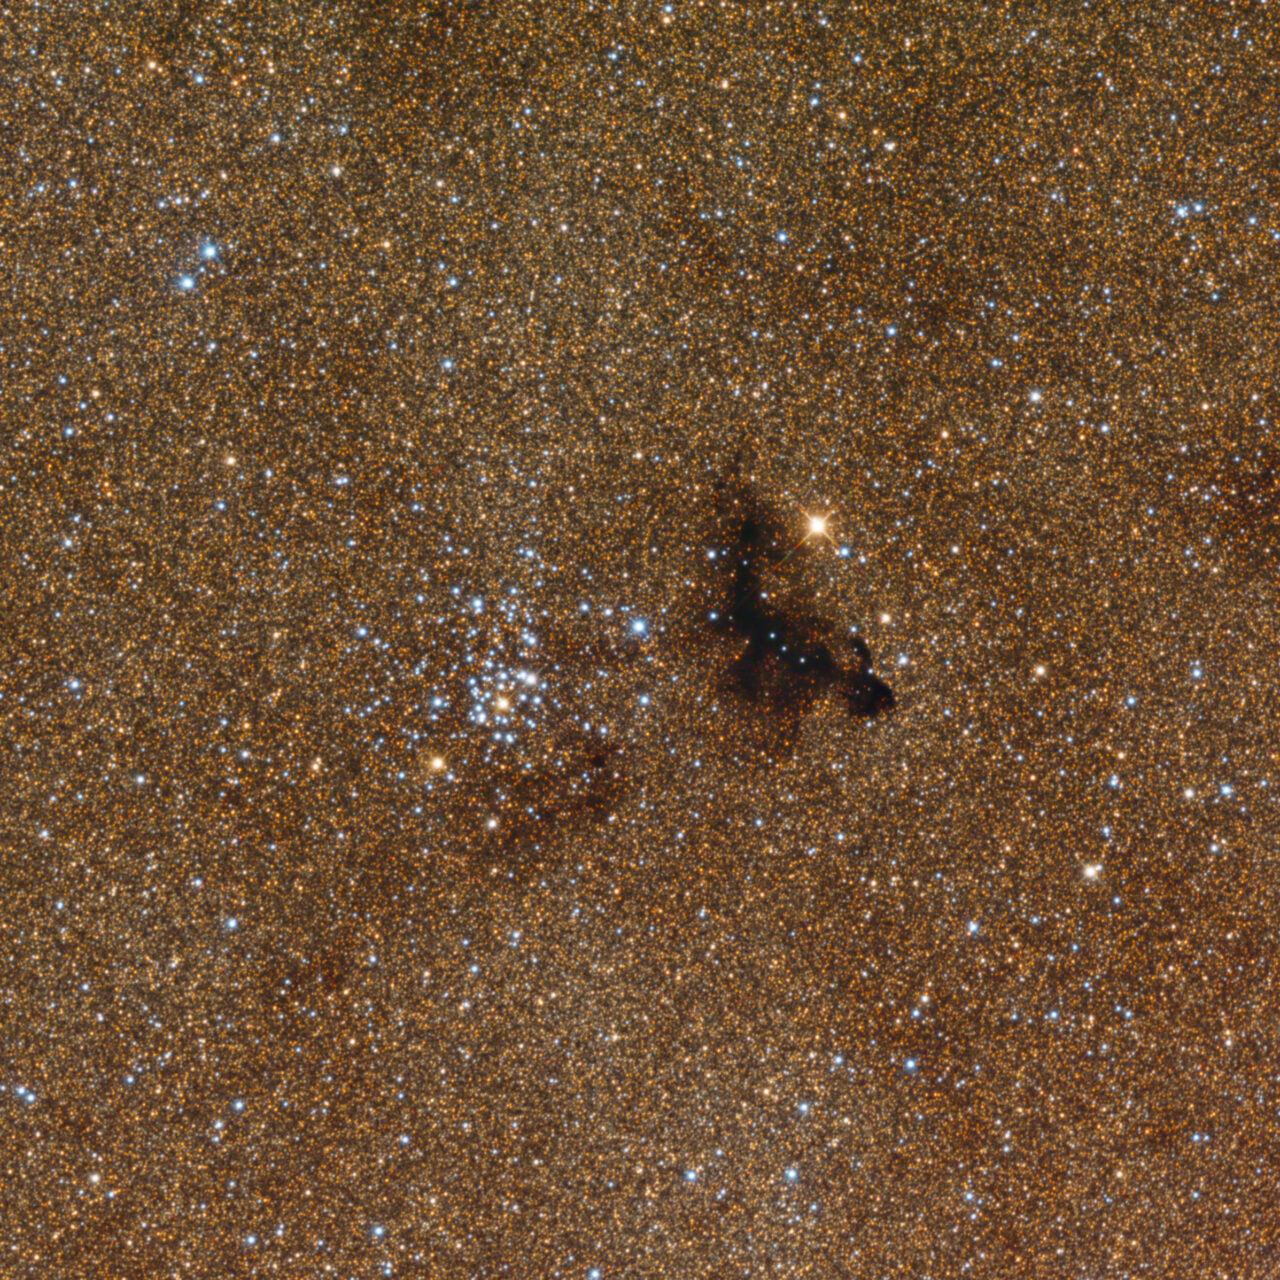 NGC 6520